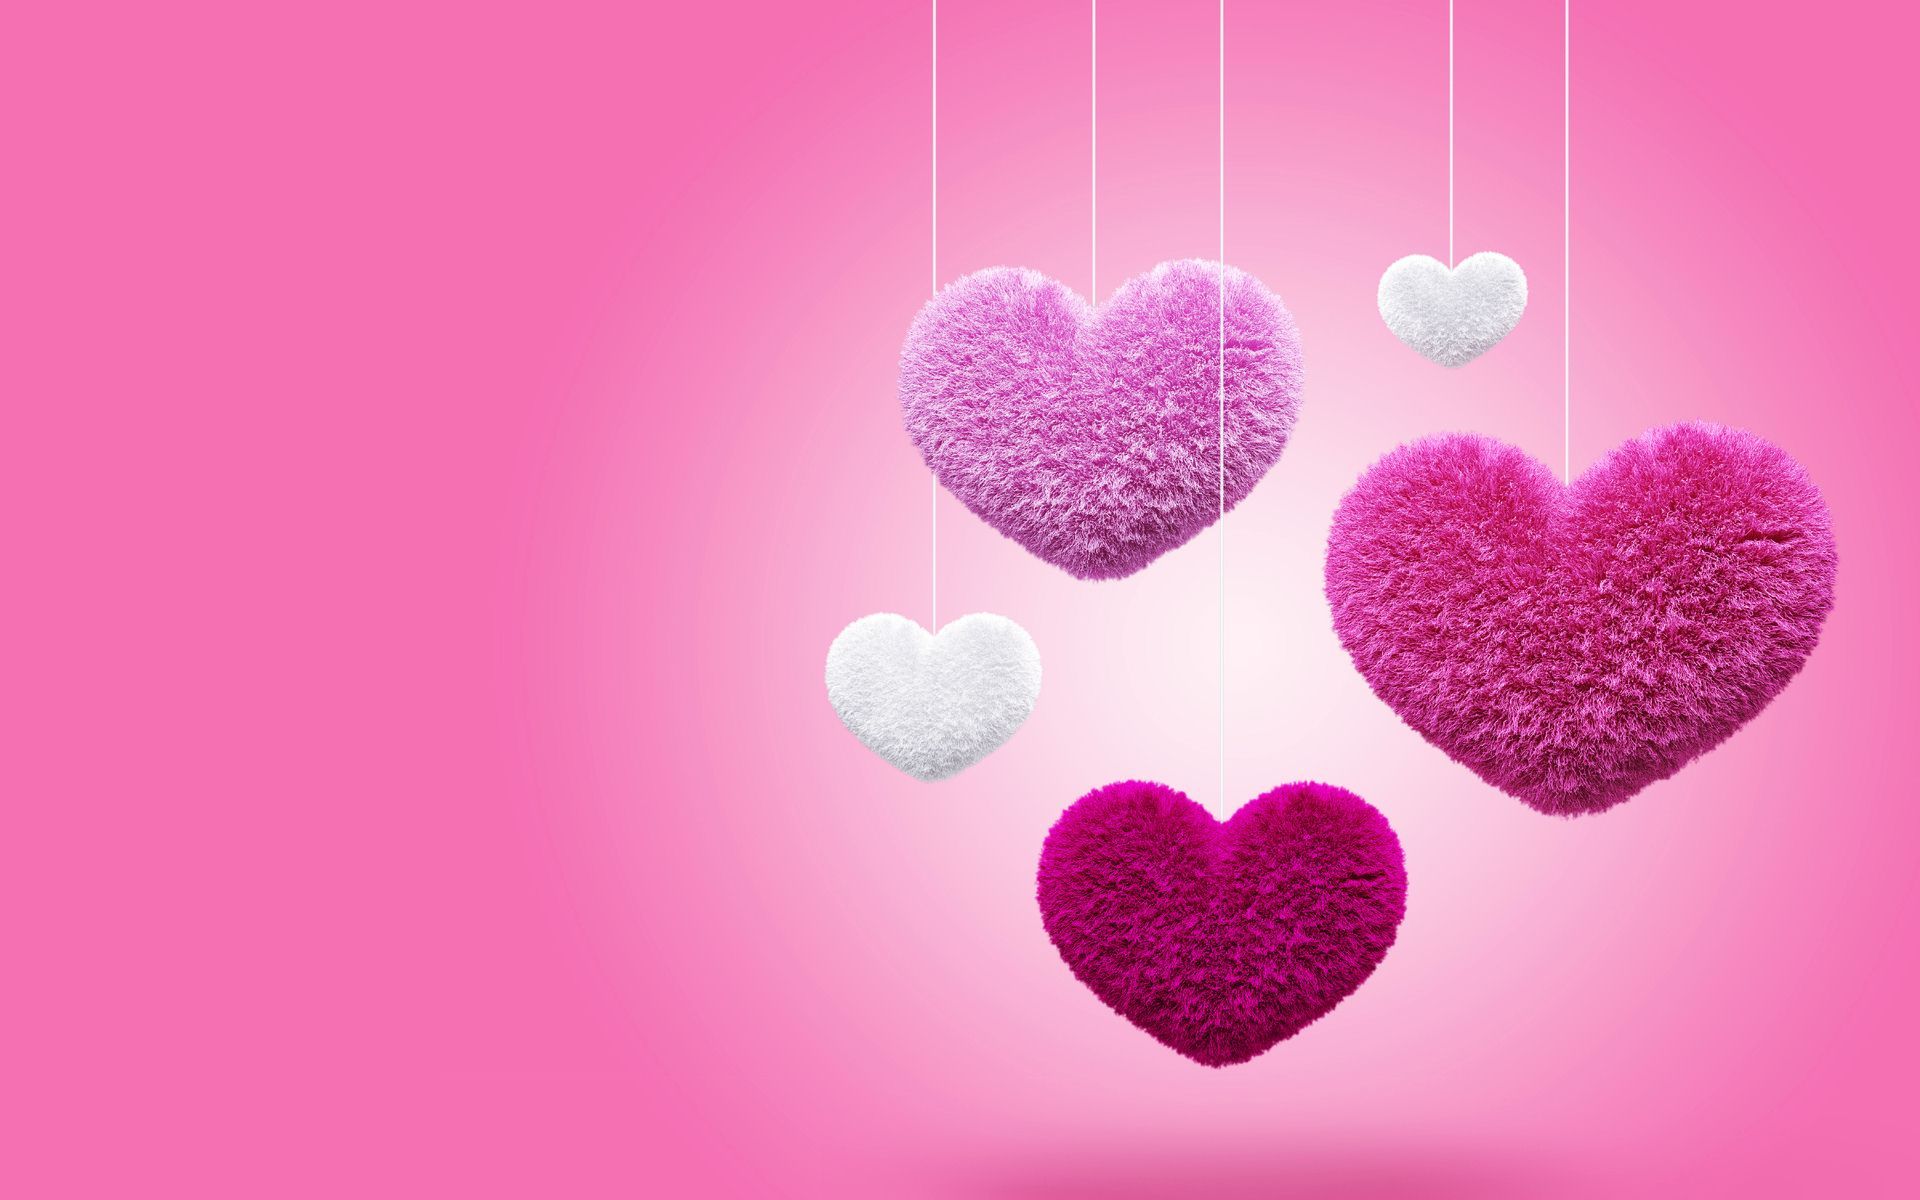 3D Love Heart 17 High Resolution Wallpaper - Hdlovewall.com